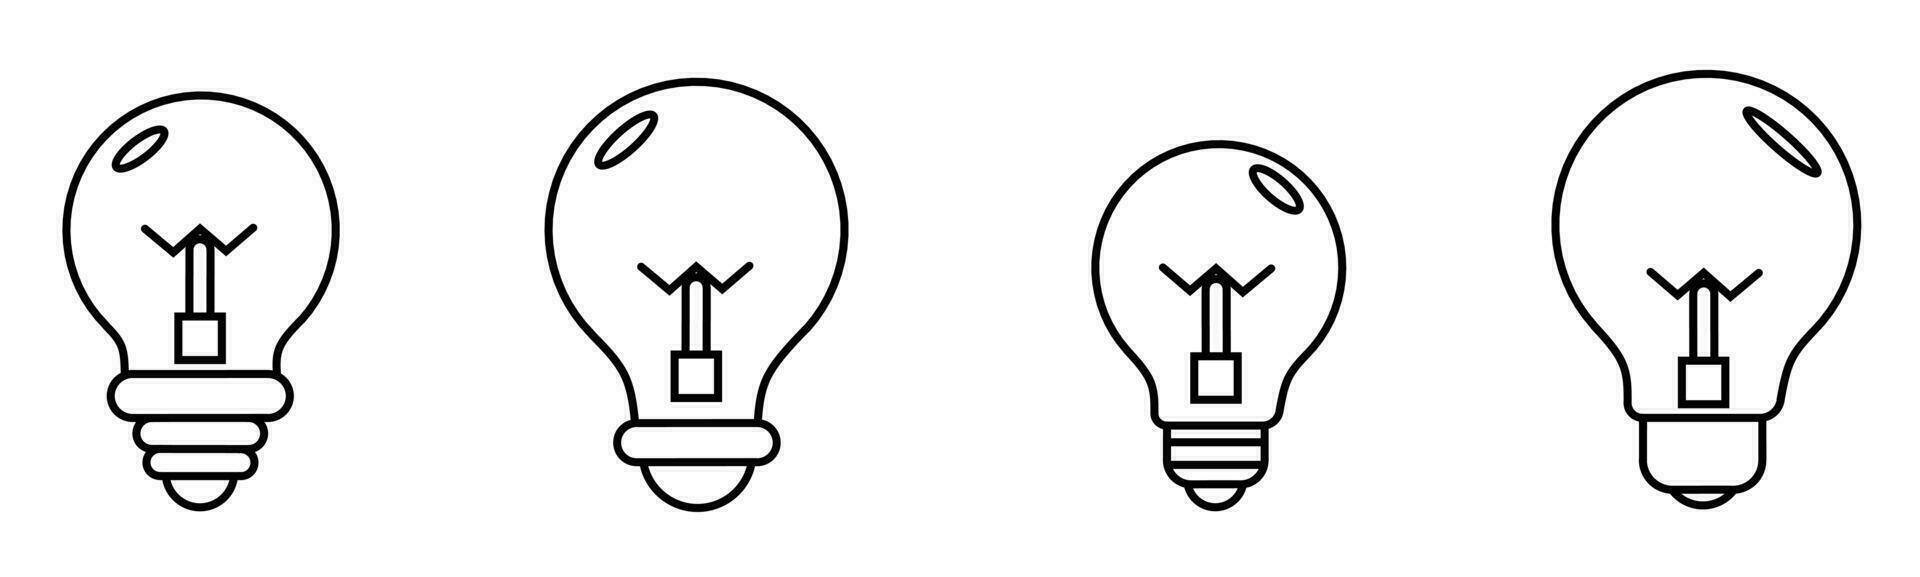 Light bulb illustration. Light bulb set for business. Stock vector. vector